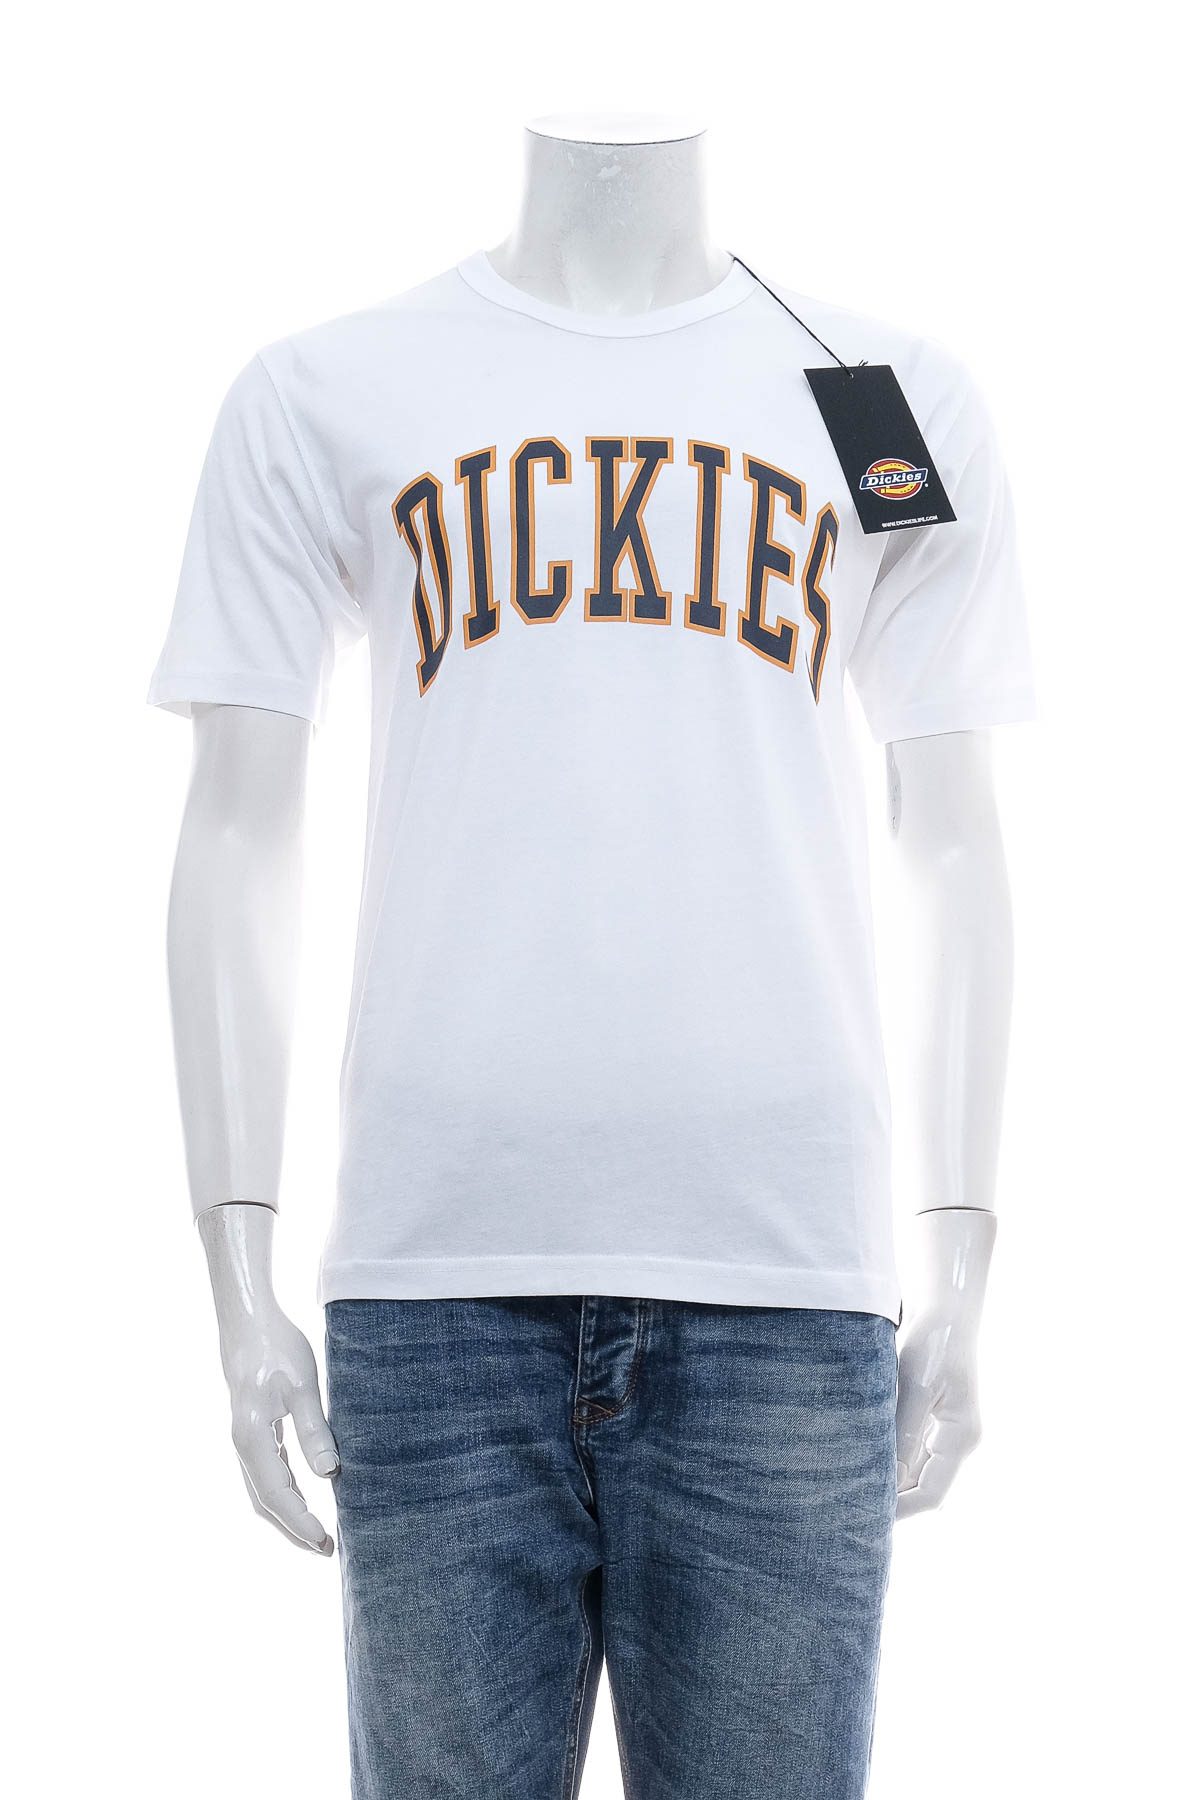 Men's T-shirt - Dickies - 0